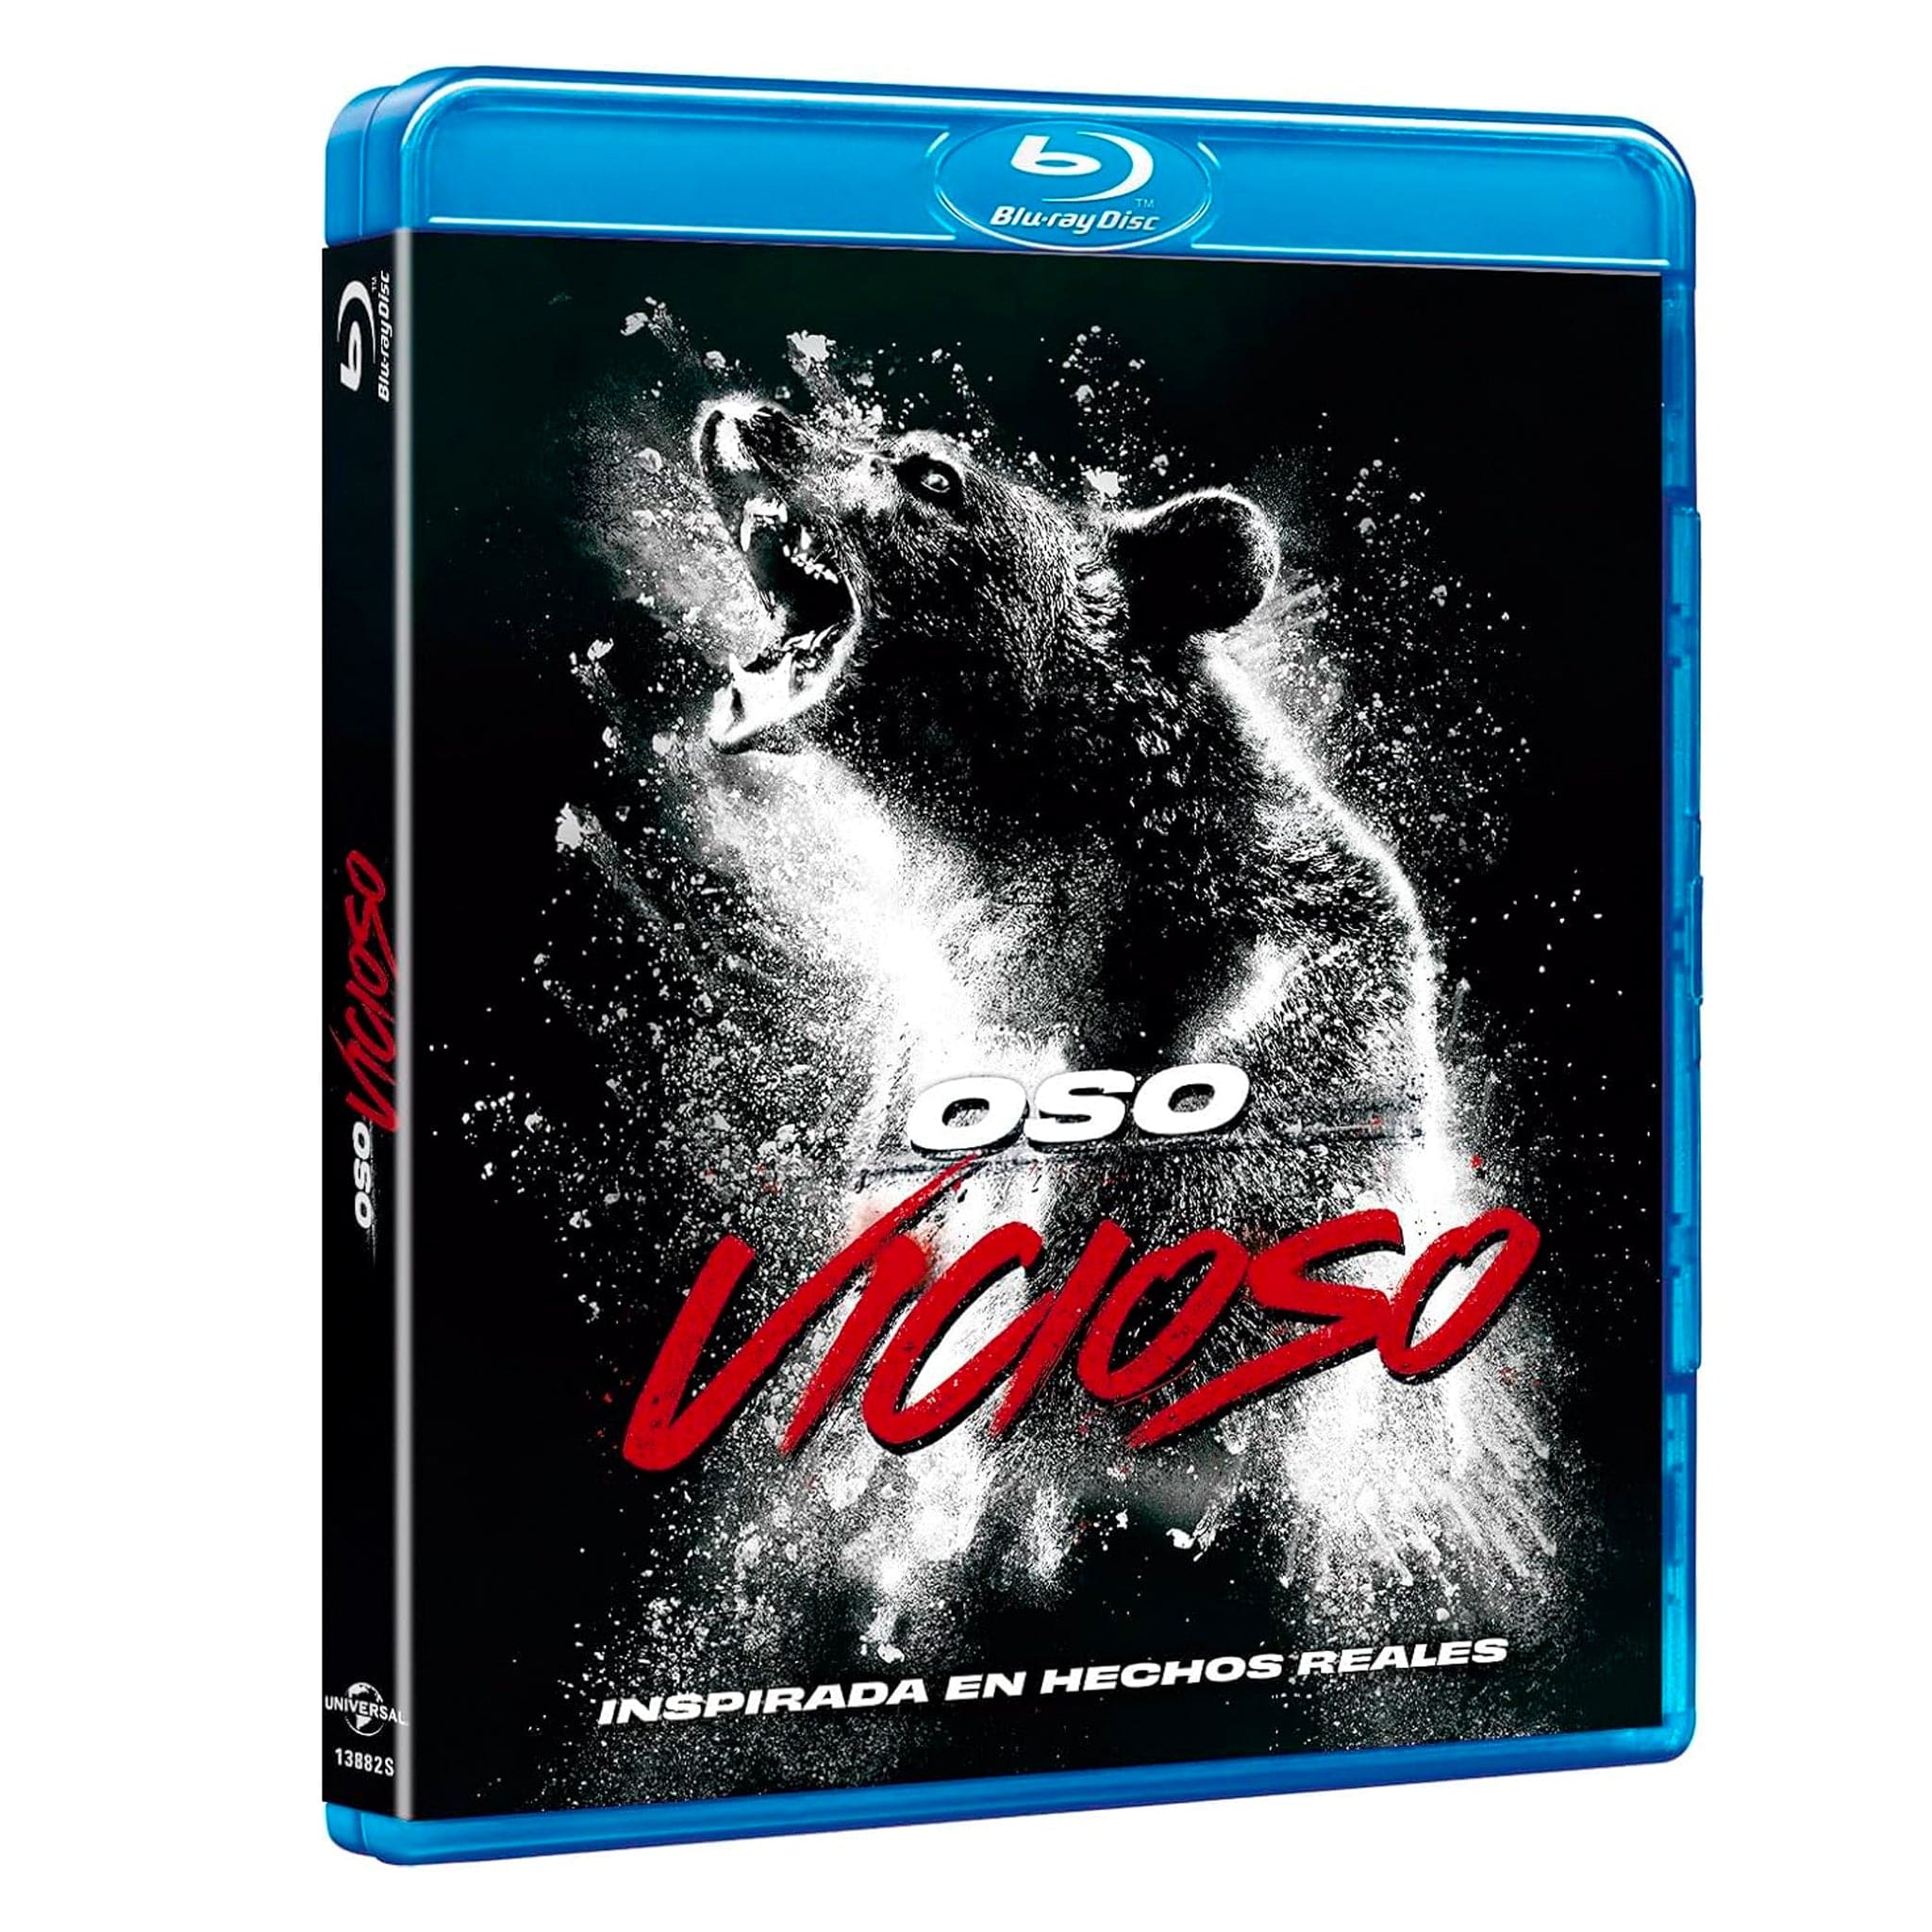 Oso Vicioso Blu-Ray - Universe of Entertainment